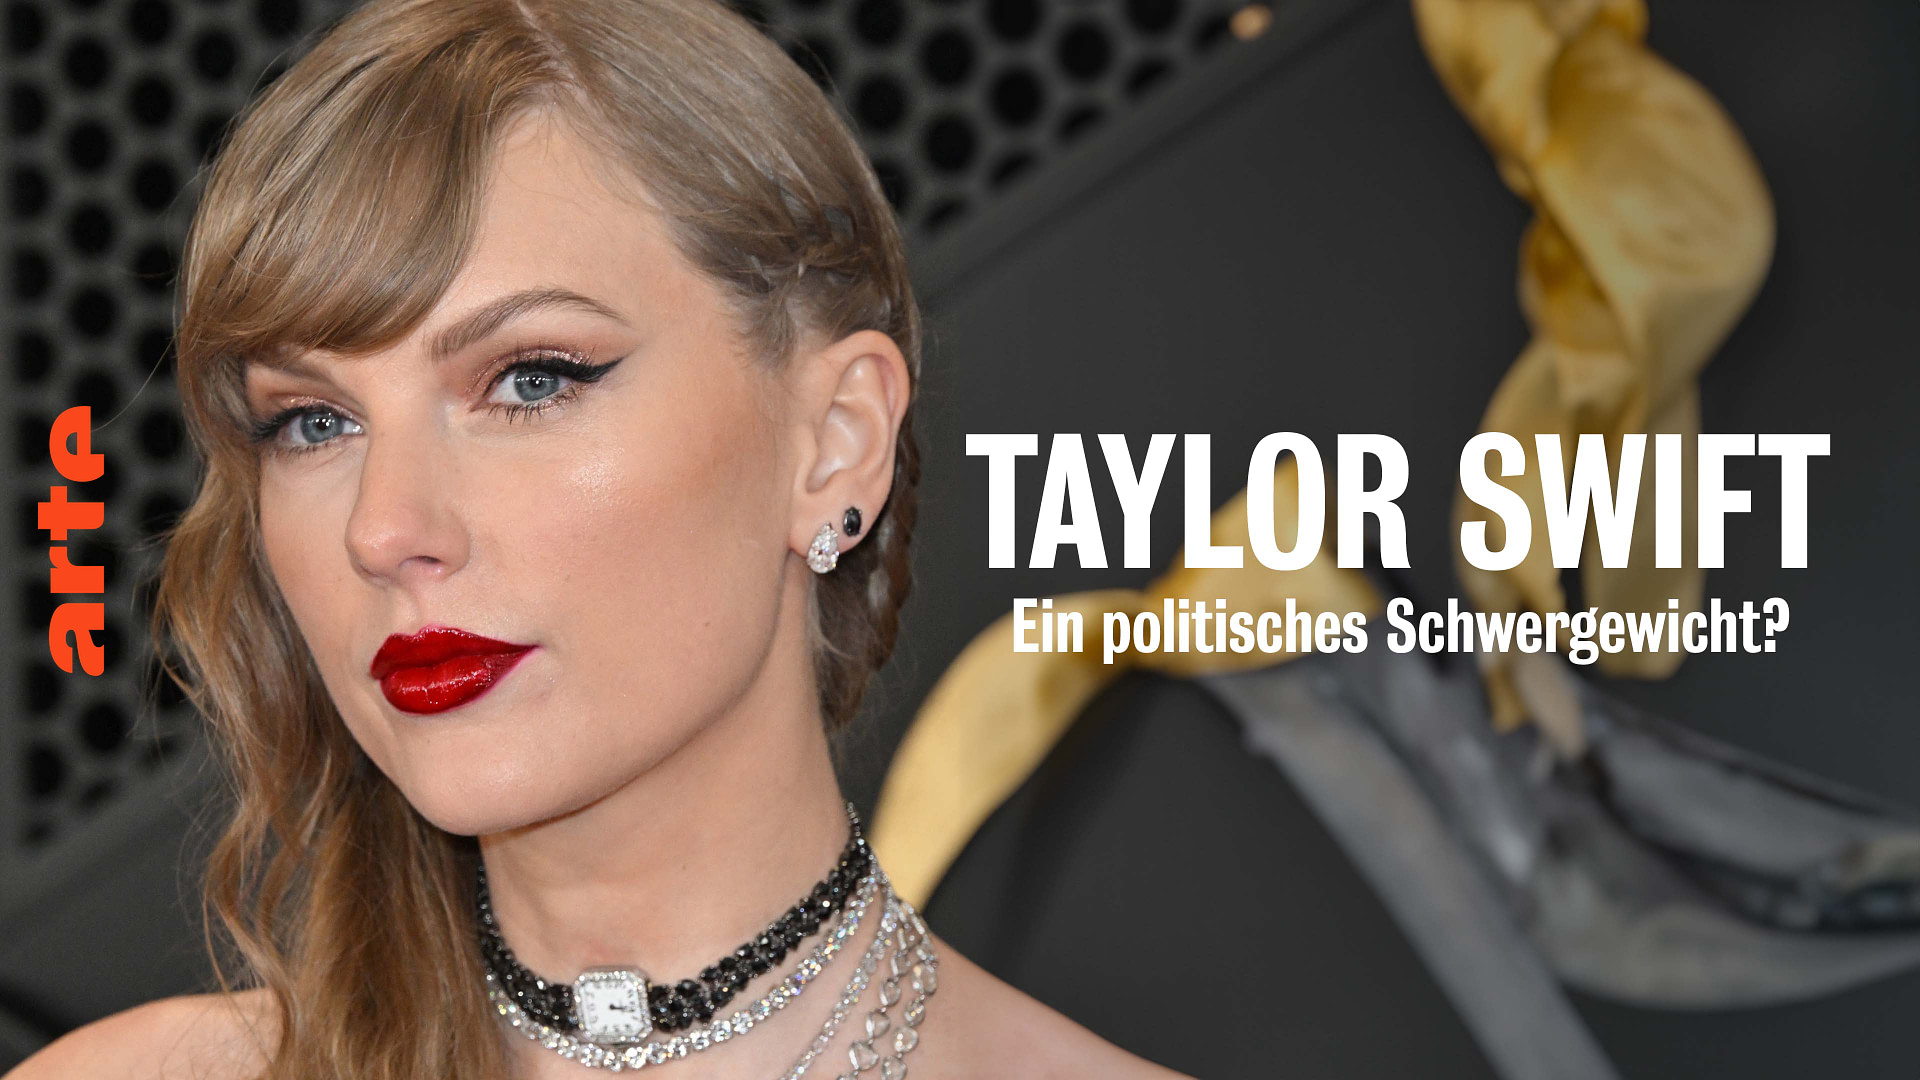 Taylor Swift: Ein politisches Schwergewicht?